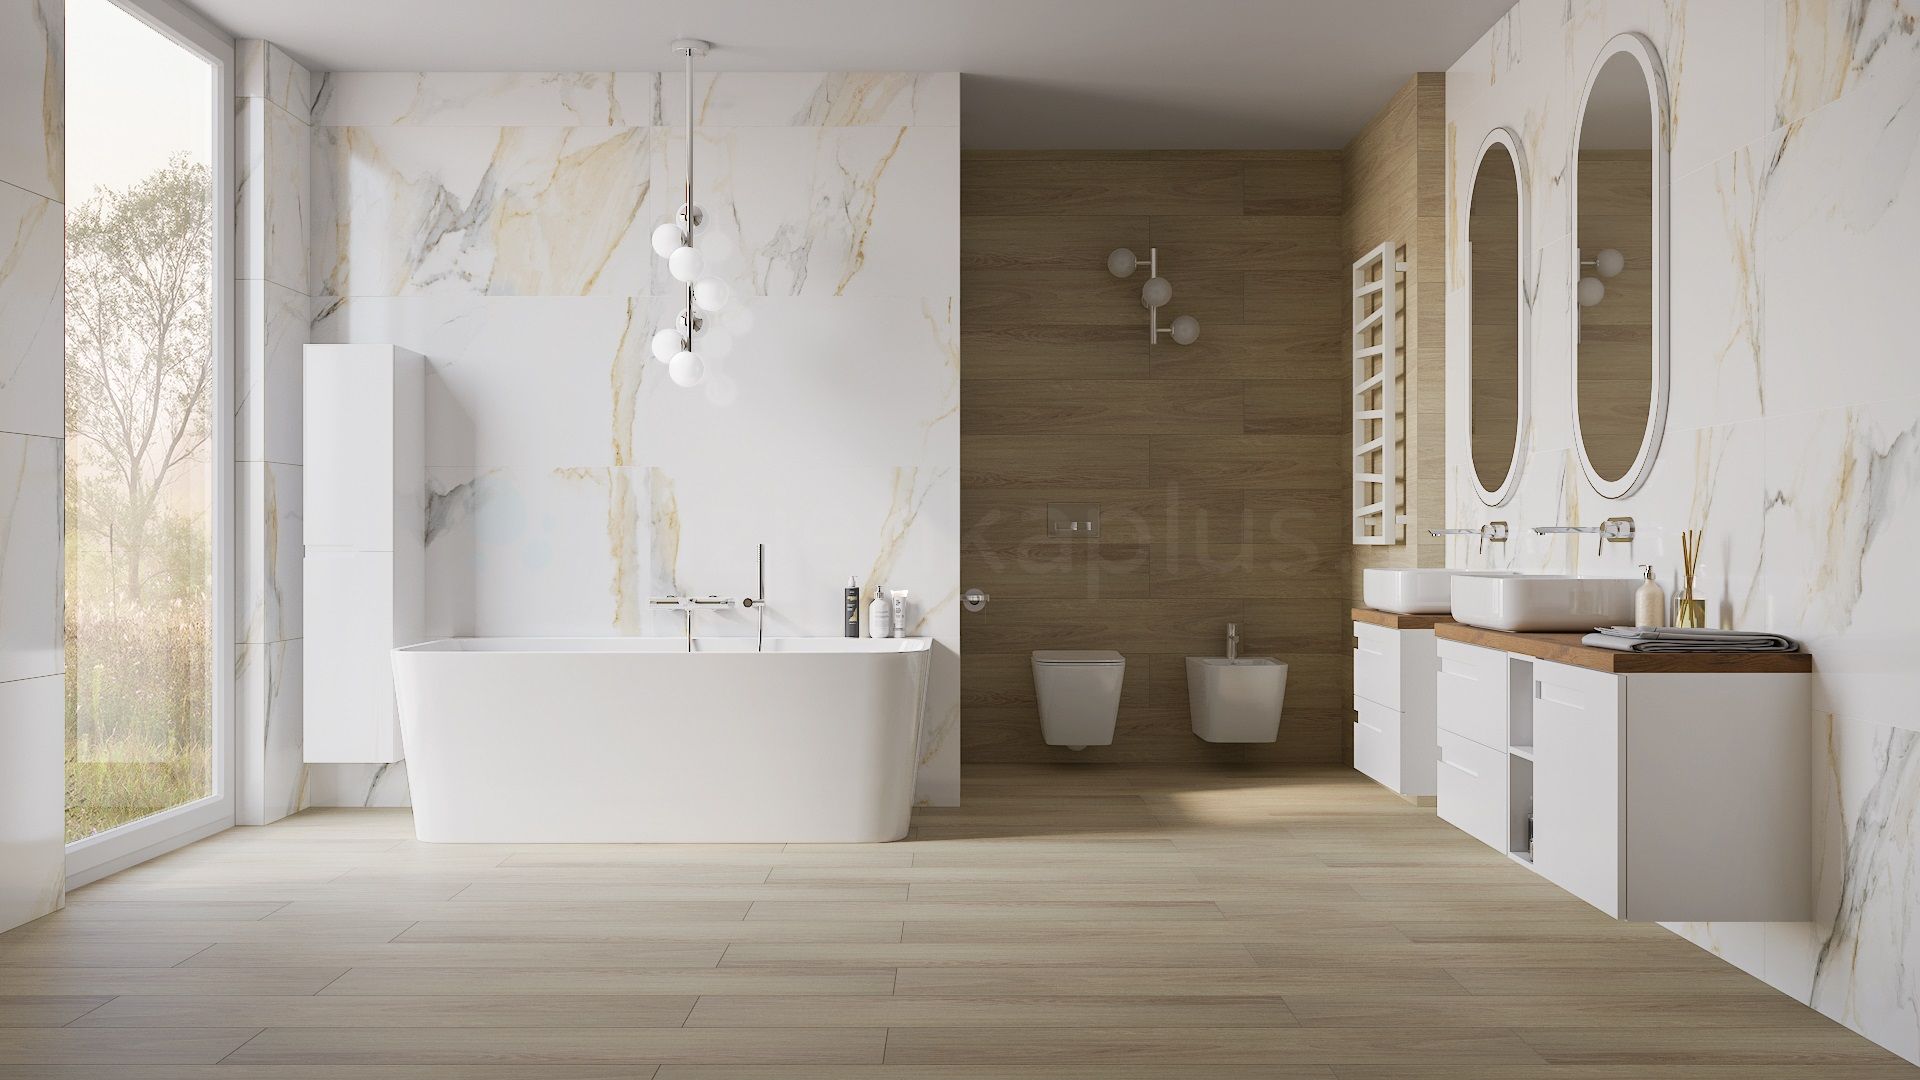 Przestronna nowoczesna łazienka w drewnie i bieli